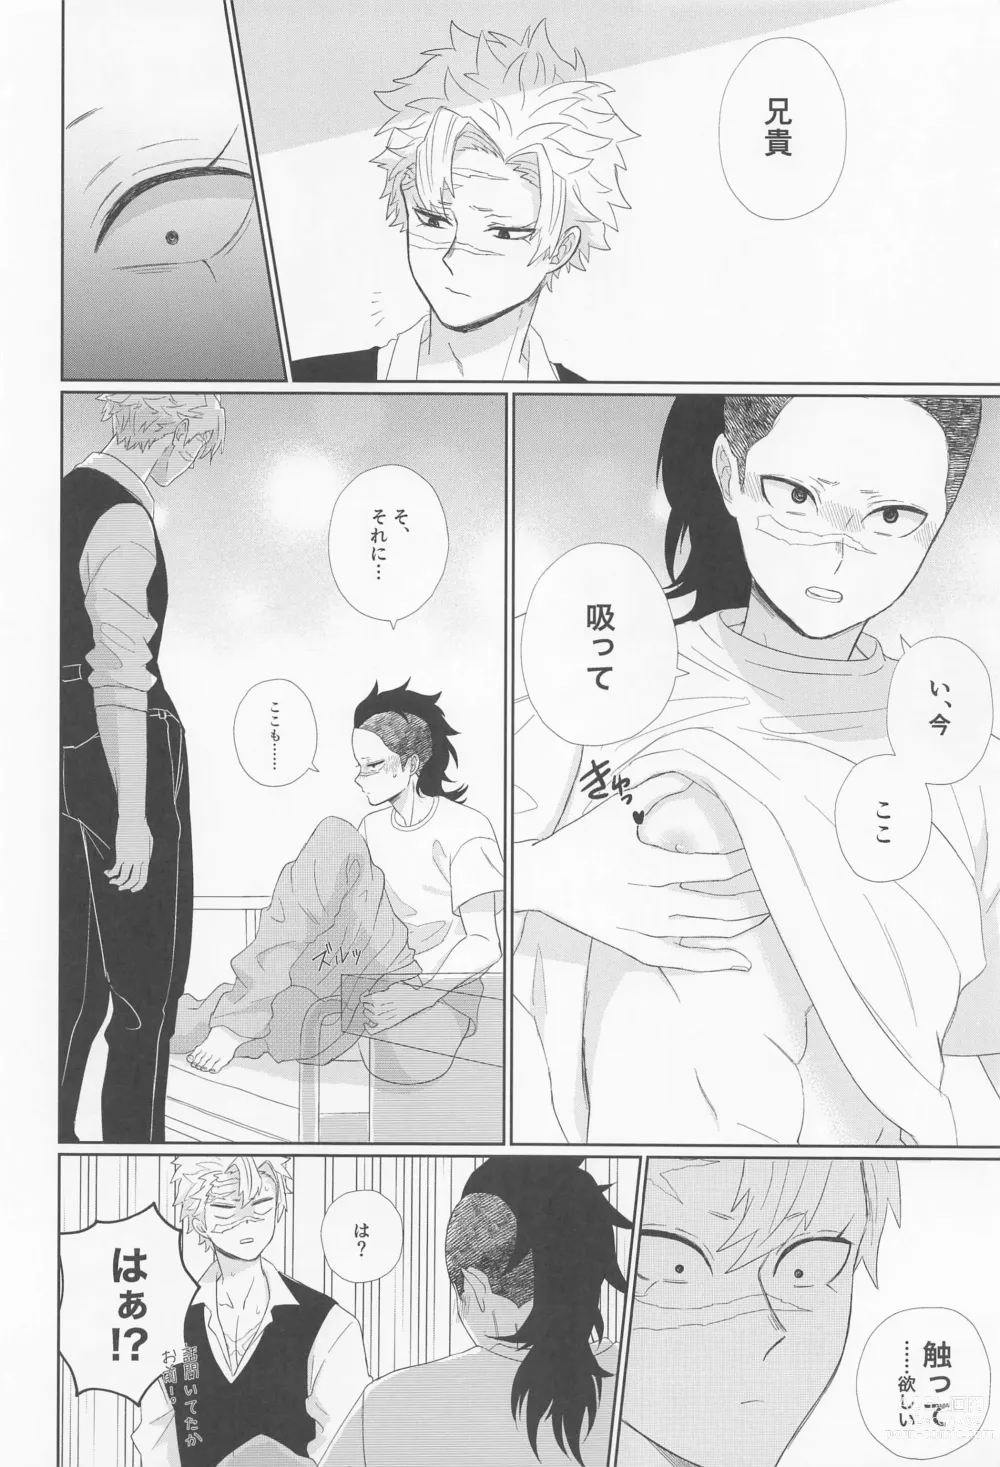 Page 28 of doujinshi Dare ni Demo Himitsu wa Aru - Everyone has secrets.